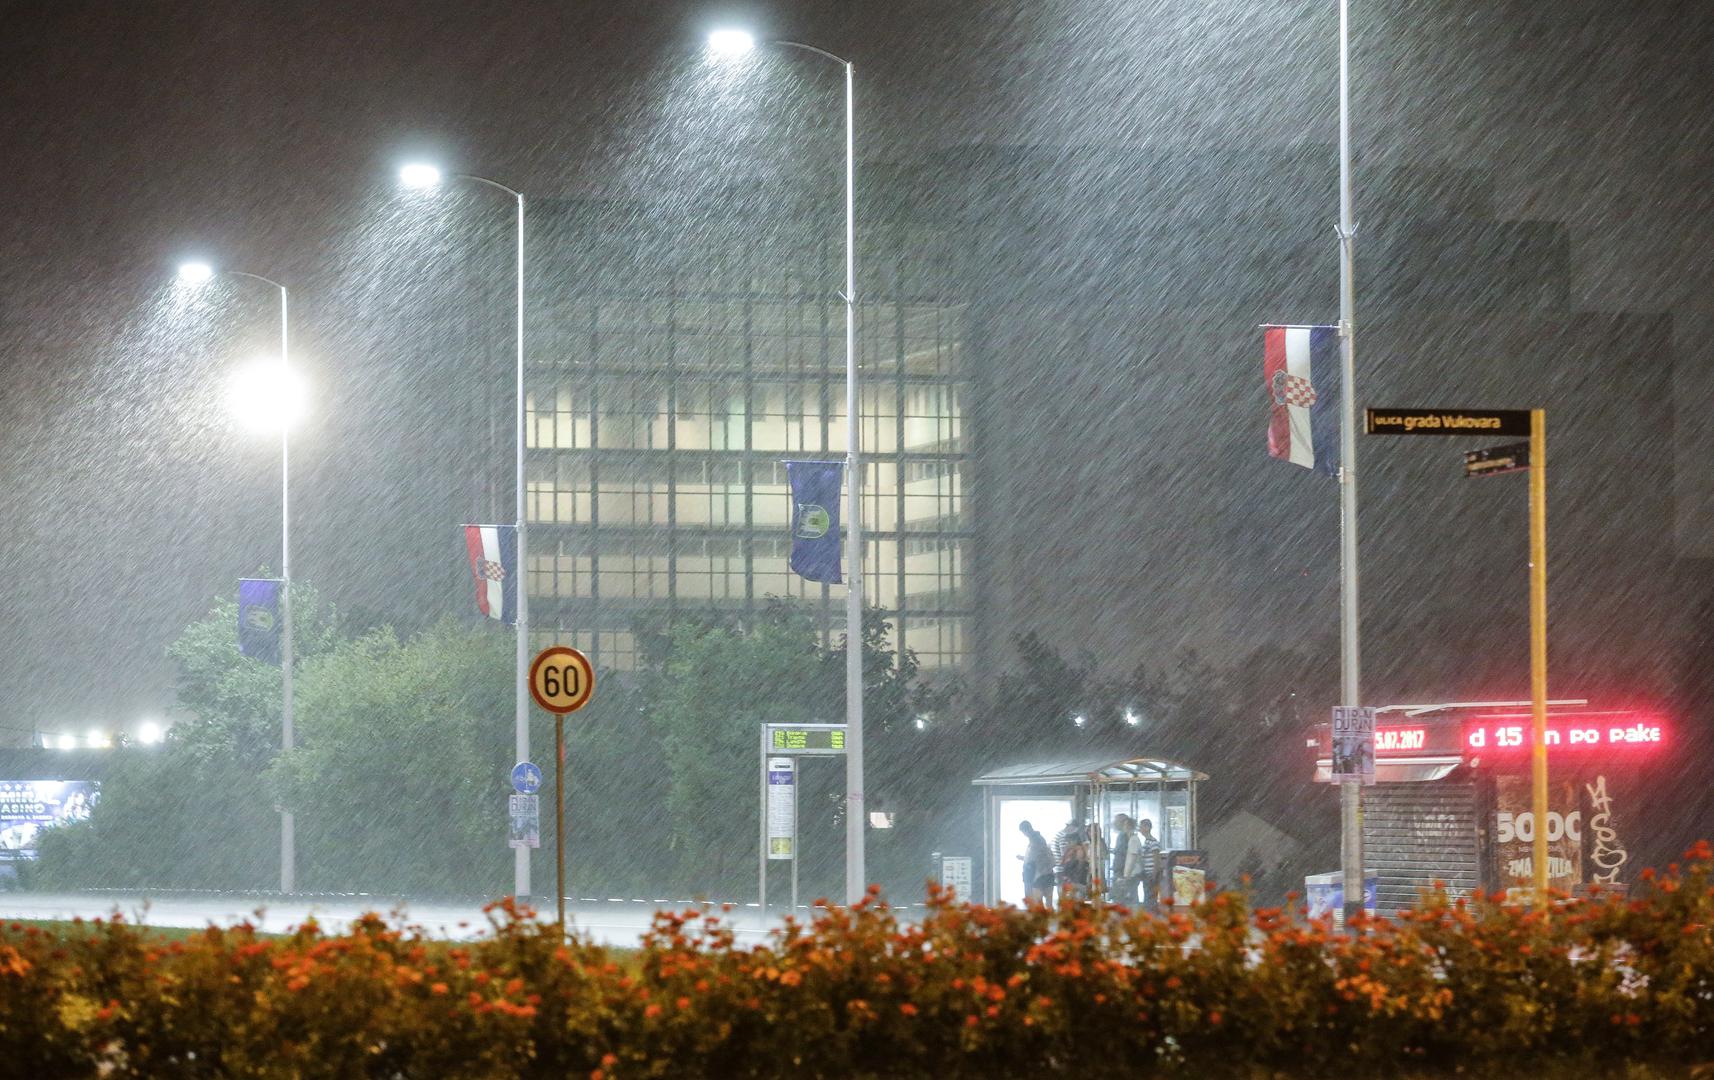 Grmljavinsko nevrijeme praćeno jakom kišom pogodilo je Zagreb u večernjim satima.